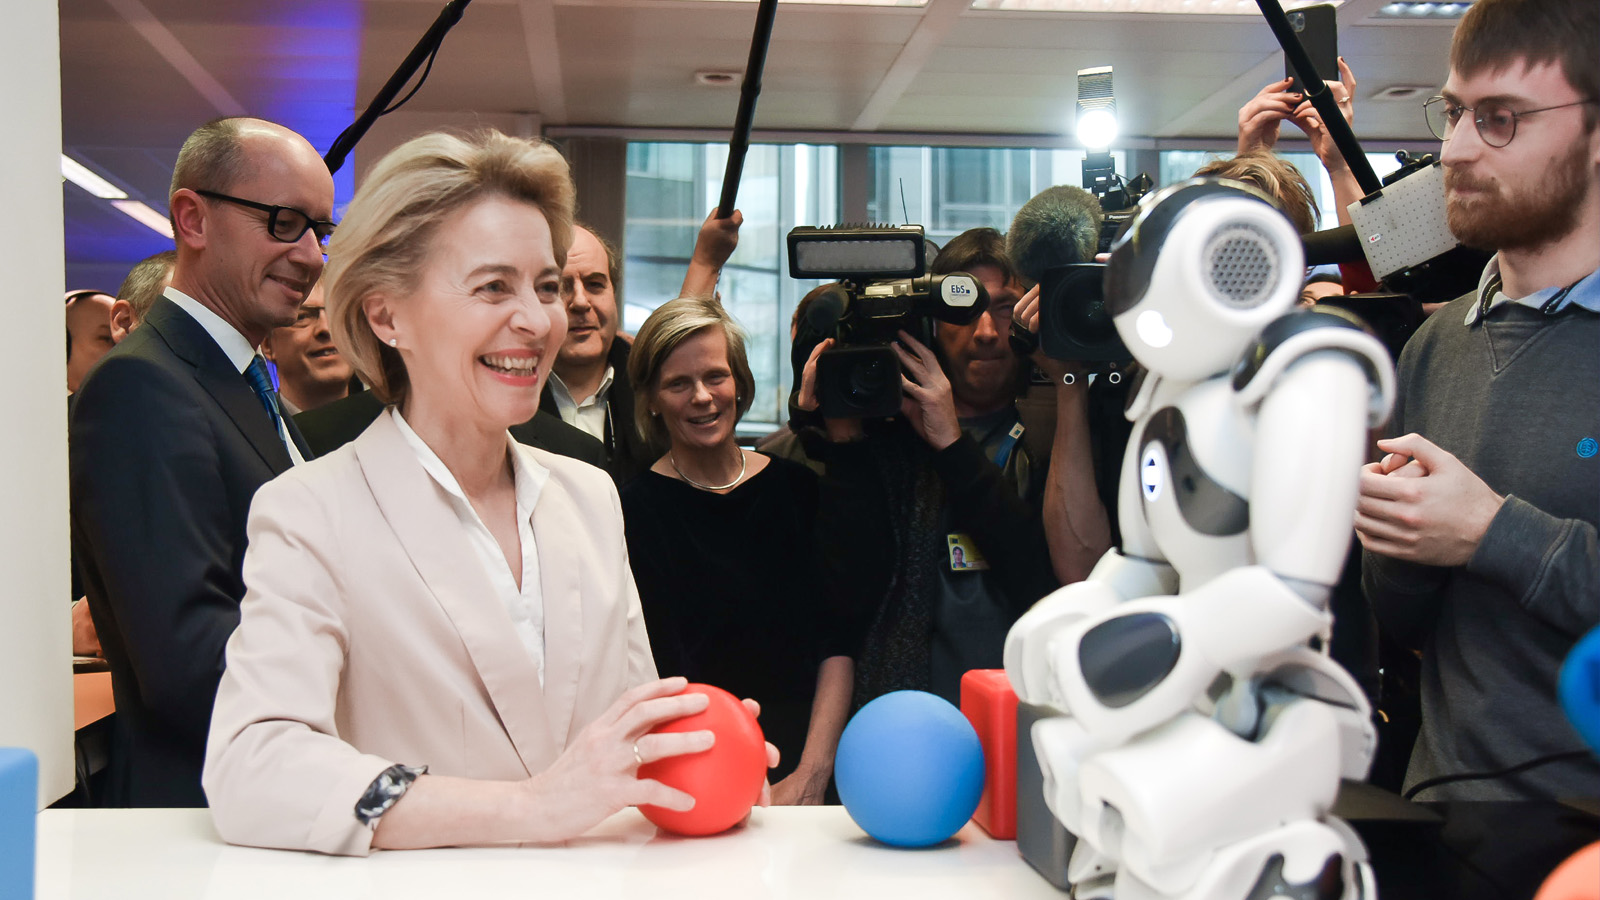 رئيسة المفوضية الأوروبية أورسولا فون دير لايين تقف أمام روبوت في لقطة تفاعلية